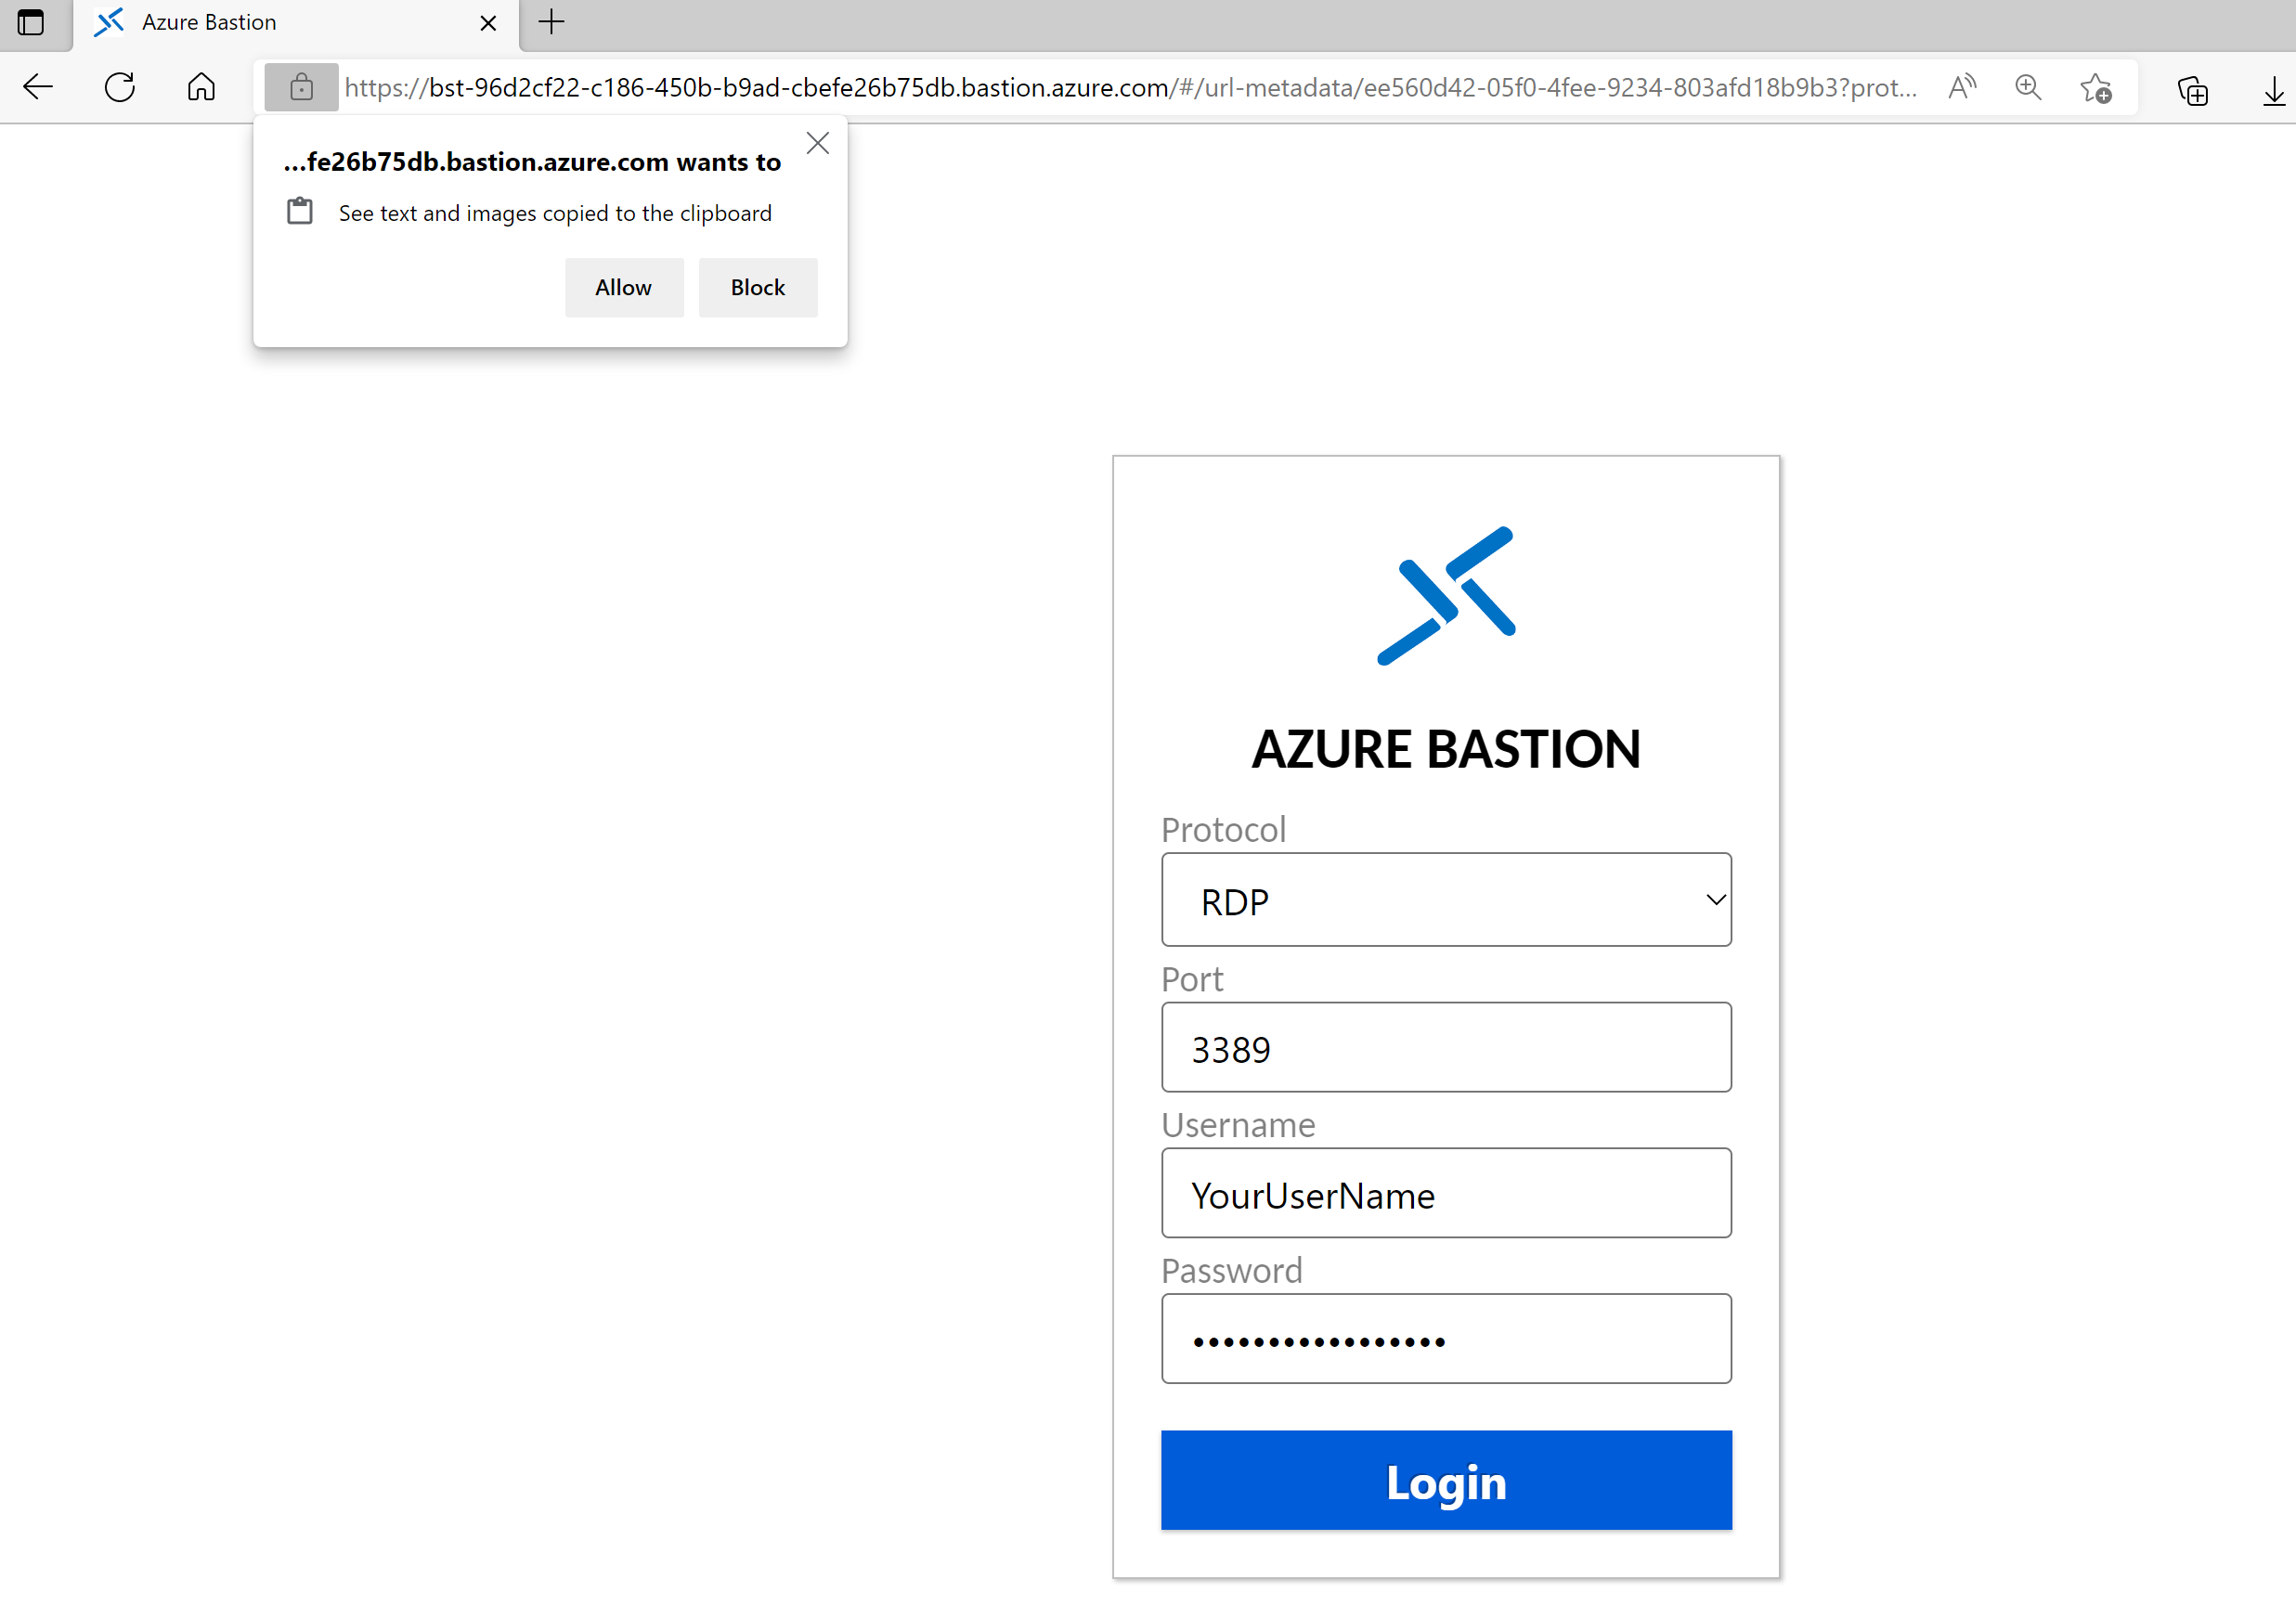 ブラウザーでの共有可能リンクを使用した bastion へのサインインを示すスクリーンショット。